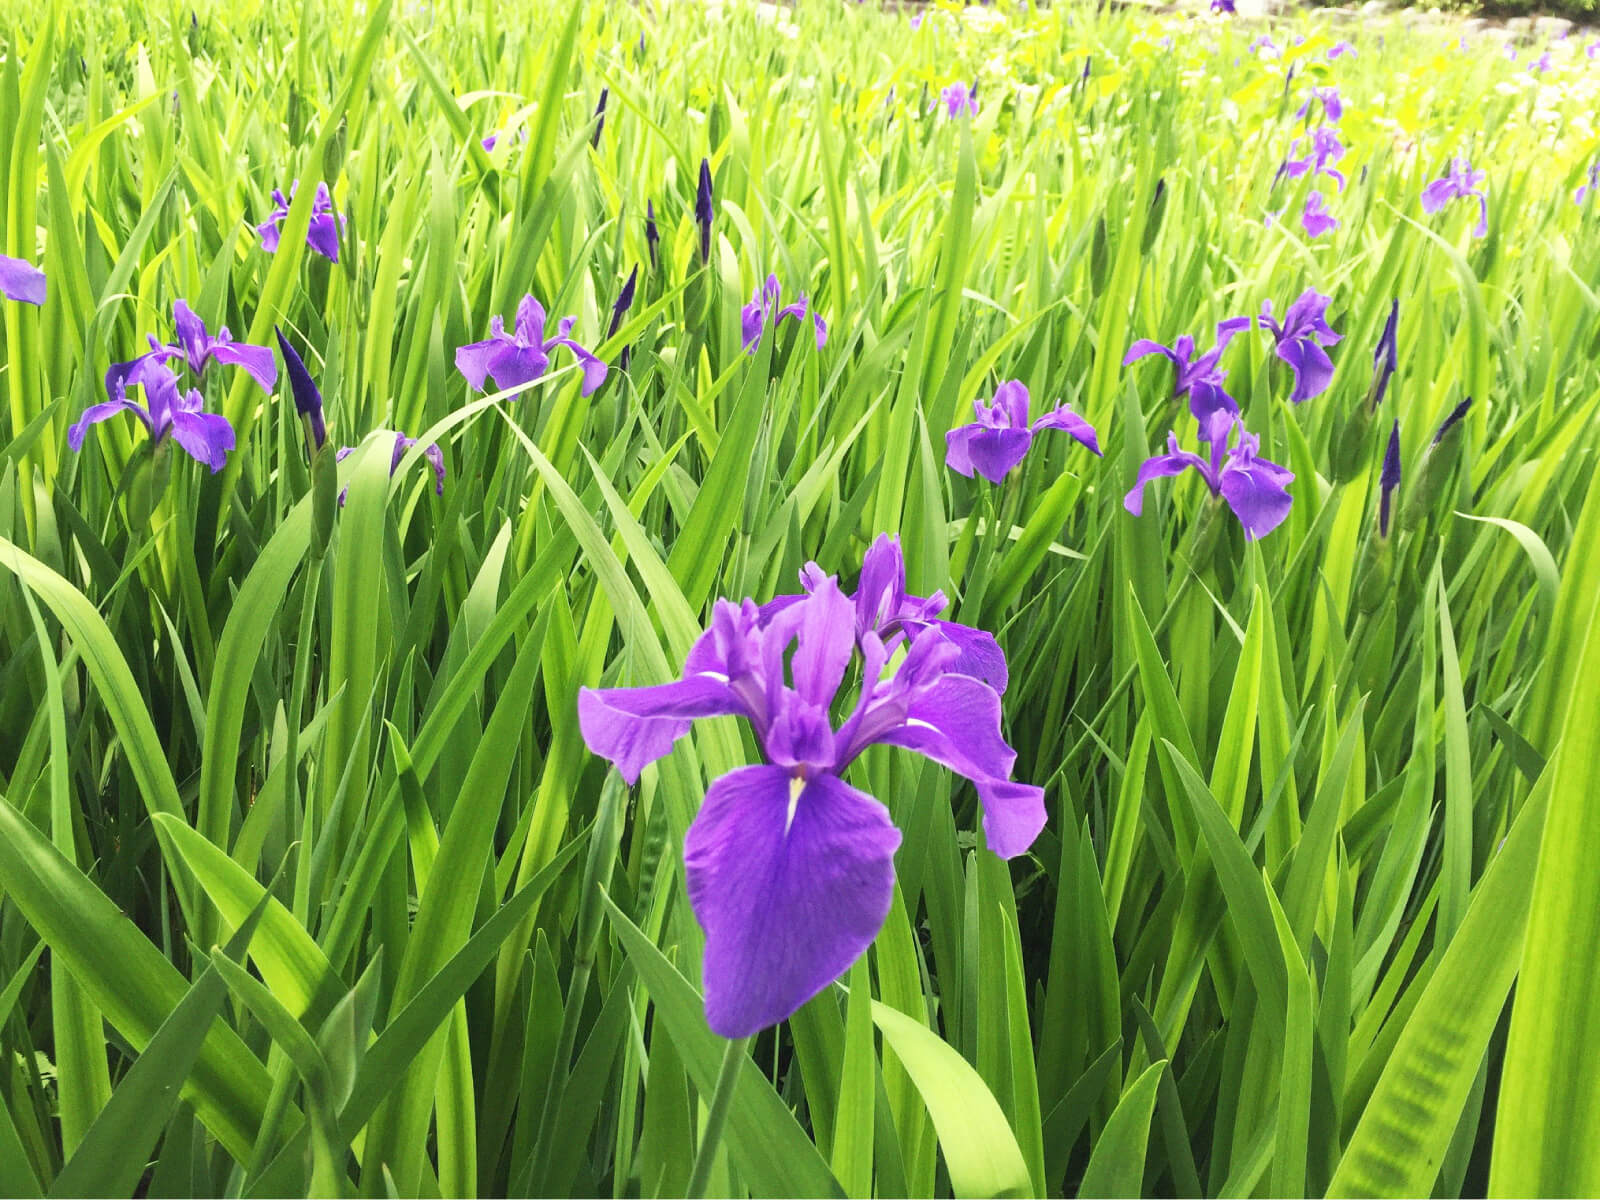 暦生活 こよみせいかつ 水辺に咲くのはカキツバタ 杜若 燕子花とも書き 咲いている場所と 紫の花の基部に一本の白筋があるのですぐに見分けがつきます なんとも美しい紫ですね 尾形光琳の 燕子花屏風図 でよく知られるように水辺の花です 菖蒲